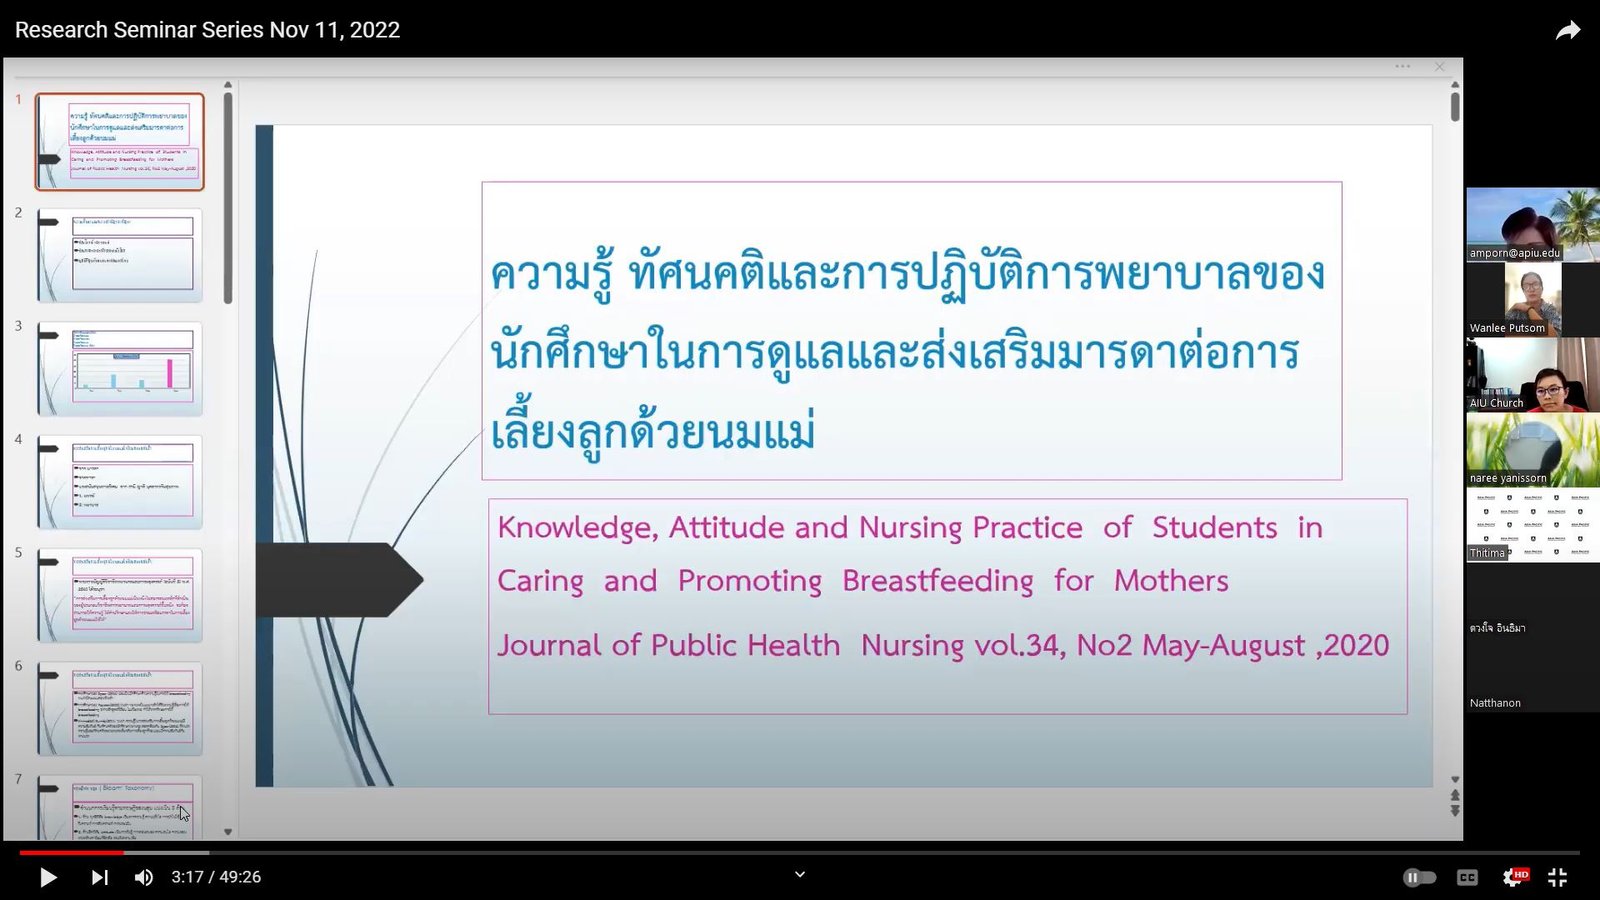 ความรู้ ทัศนคติ และการปฏิบัติการพยาบาลของนักศึกษาในการดูแลและส่งเสริมมารดาต่อการเลี้ยงลูกด้วยนมแม่ (Knowledge, Attitude, and Nursing Practice of Students in Caring and Promoting Breastfeeding for Mothers)